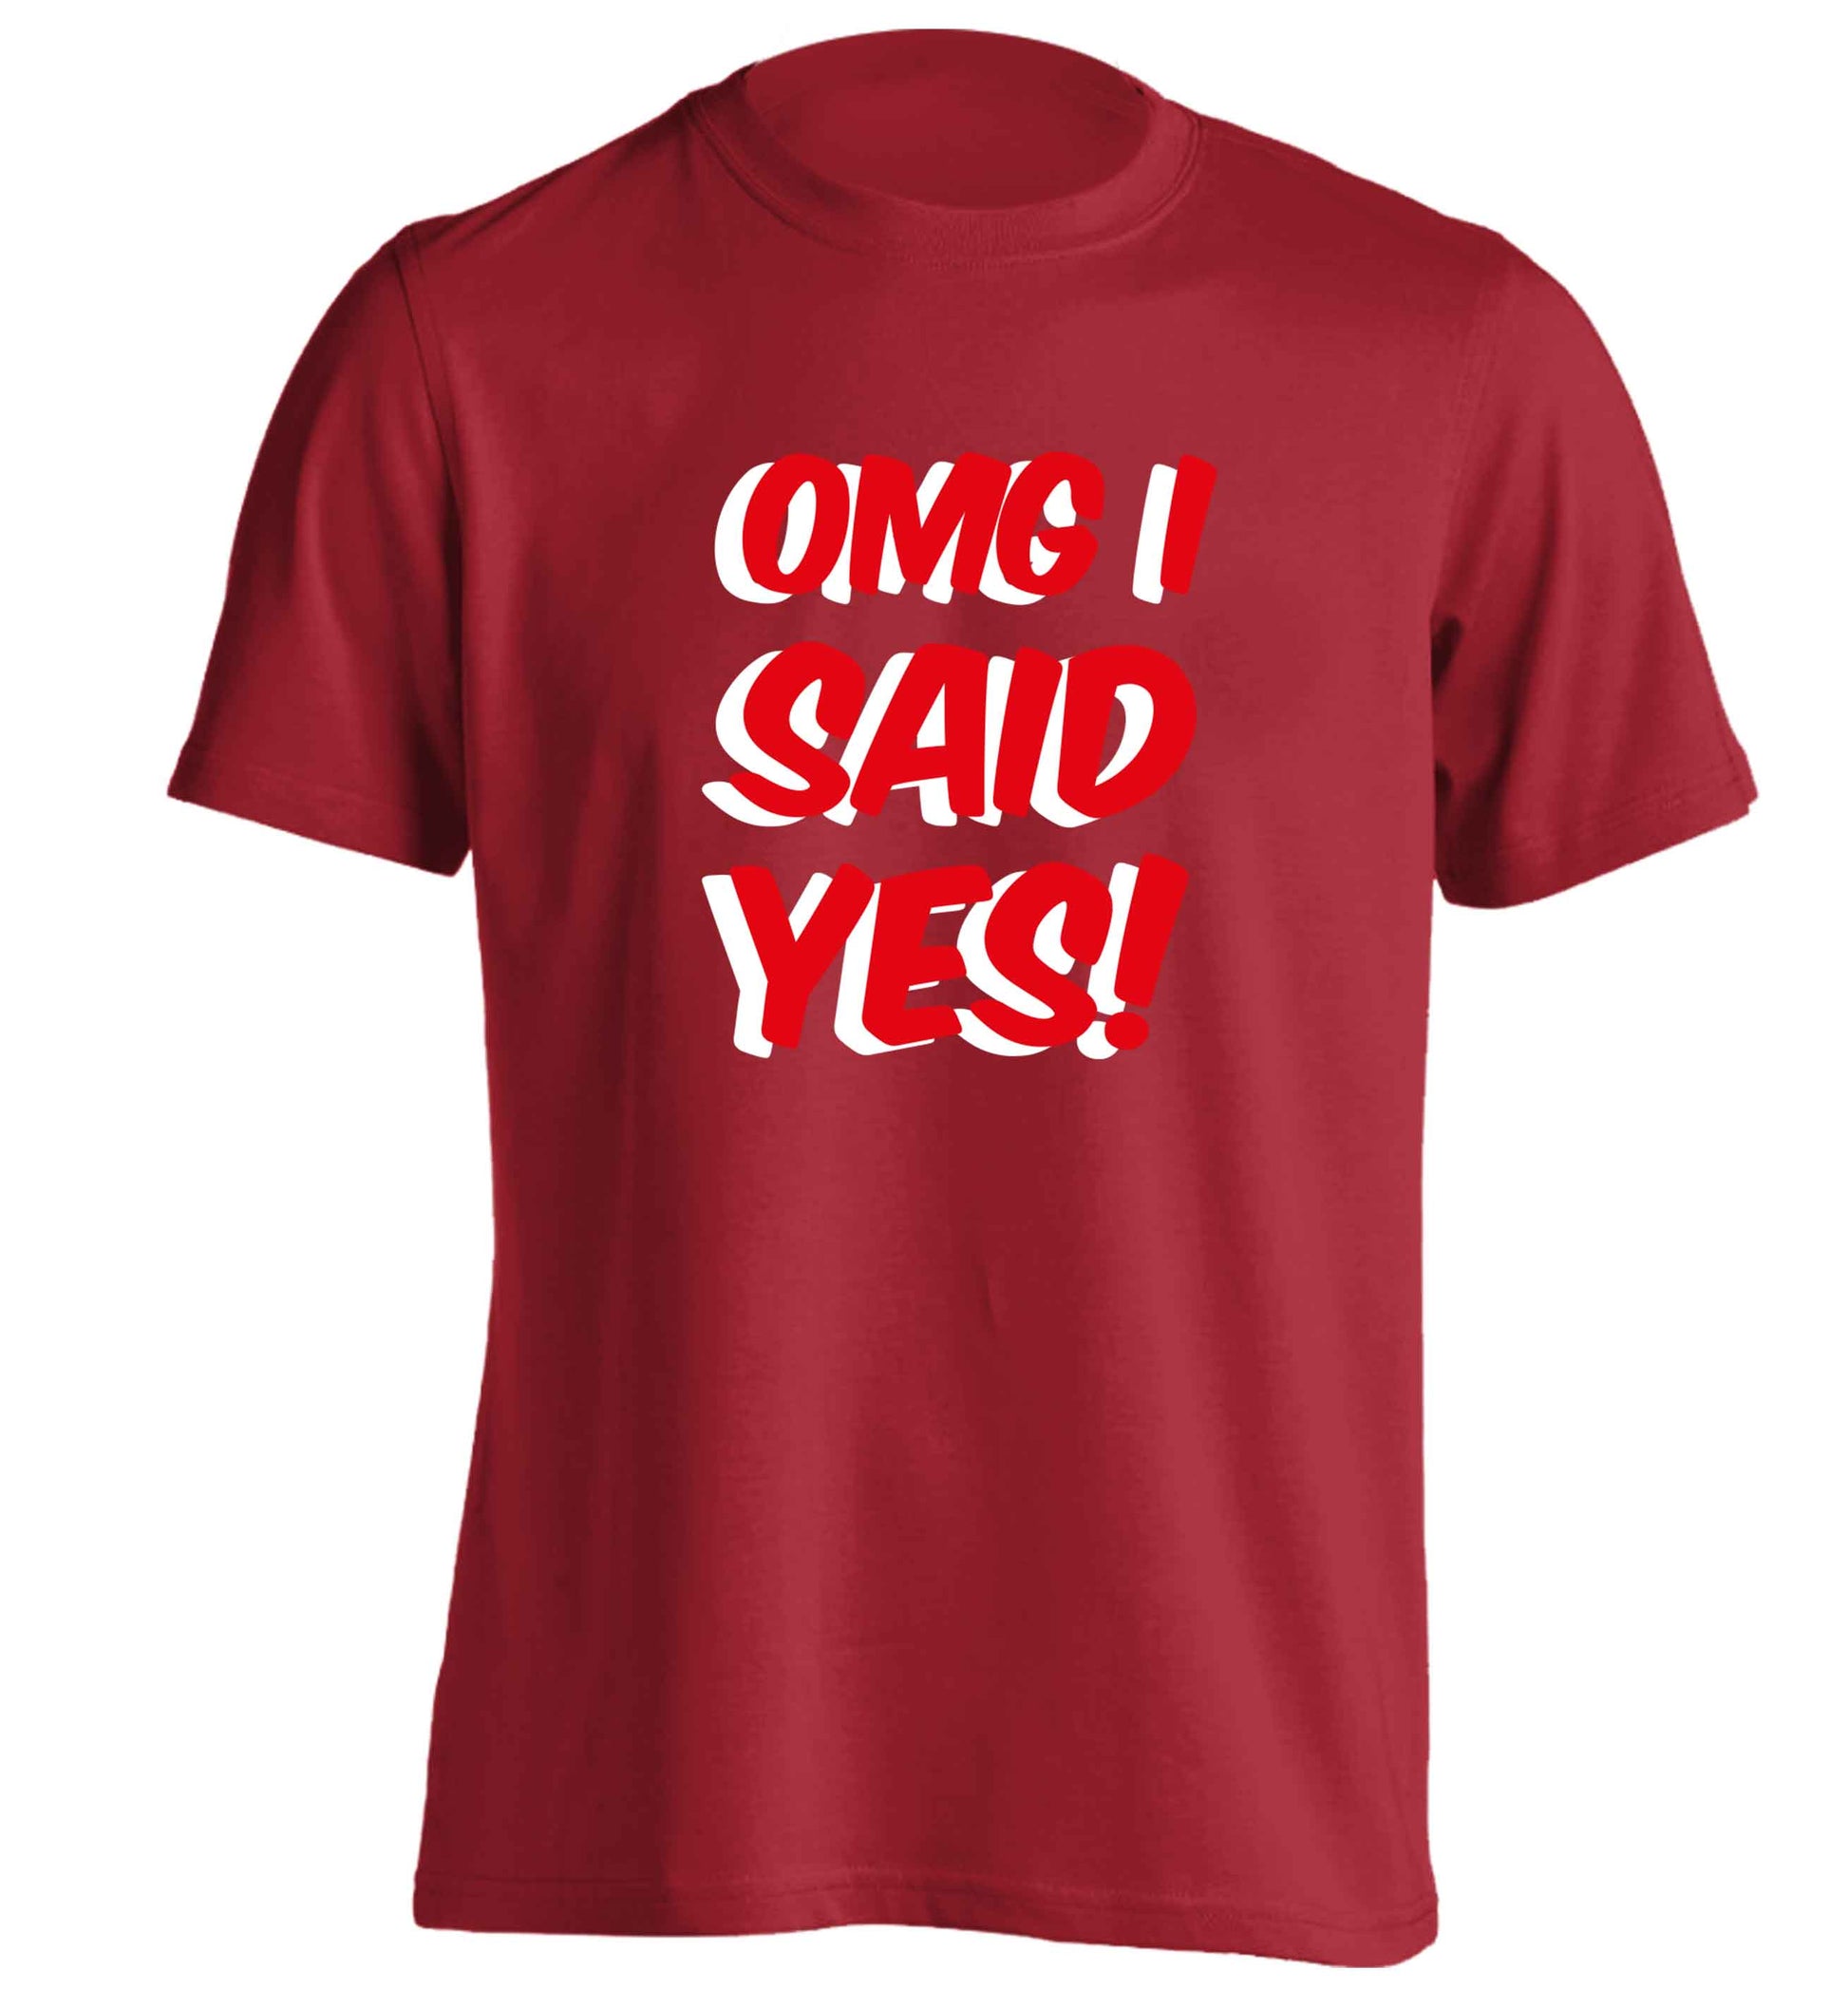 Omg I said yes adults unisex red Tshirt 2XL